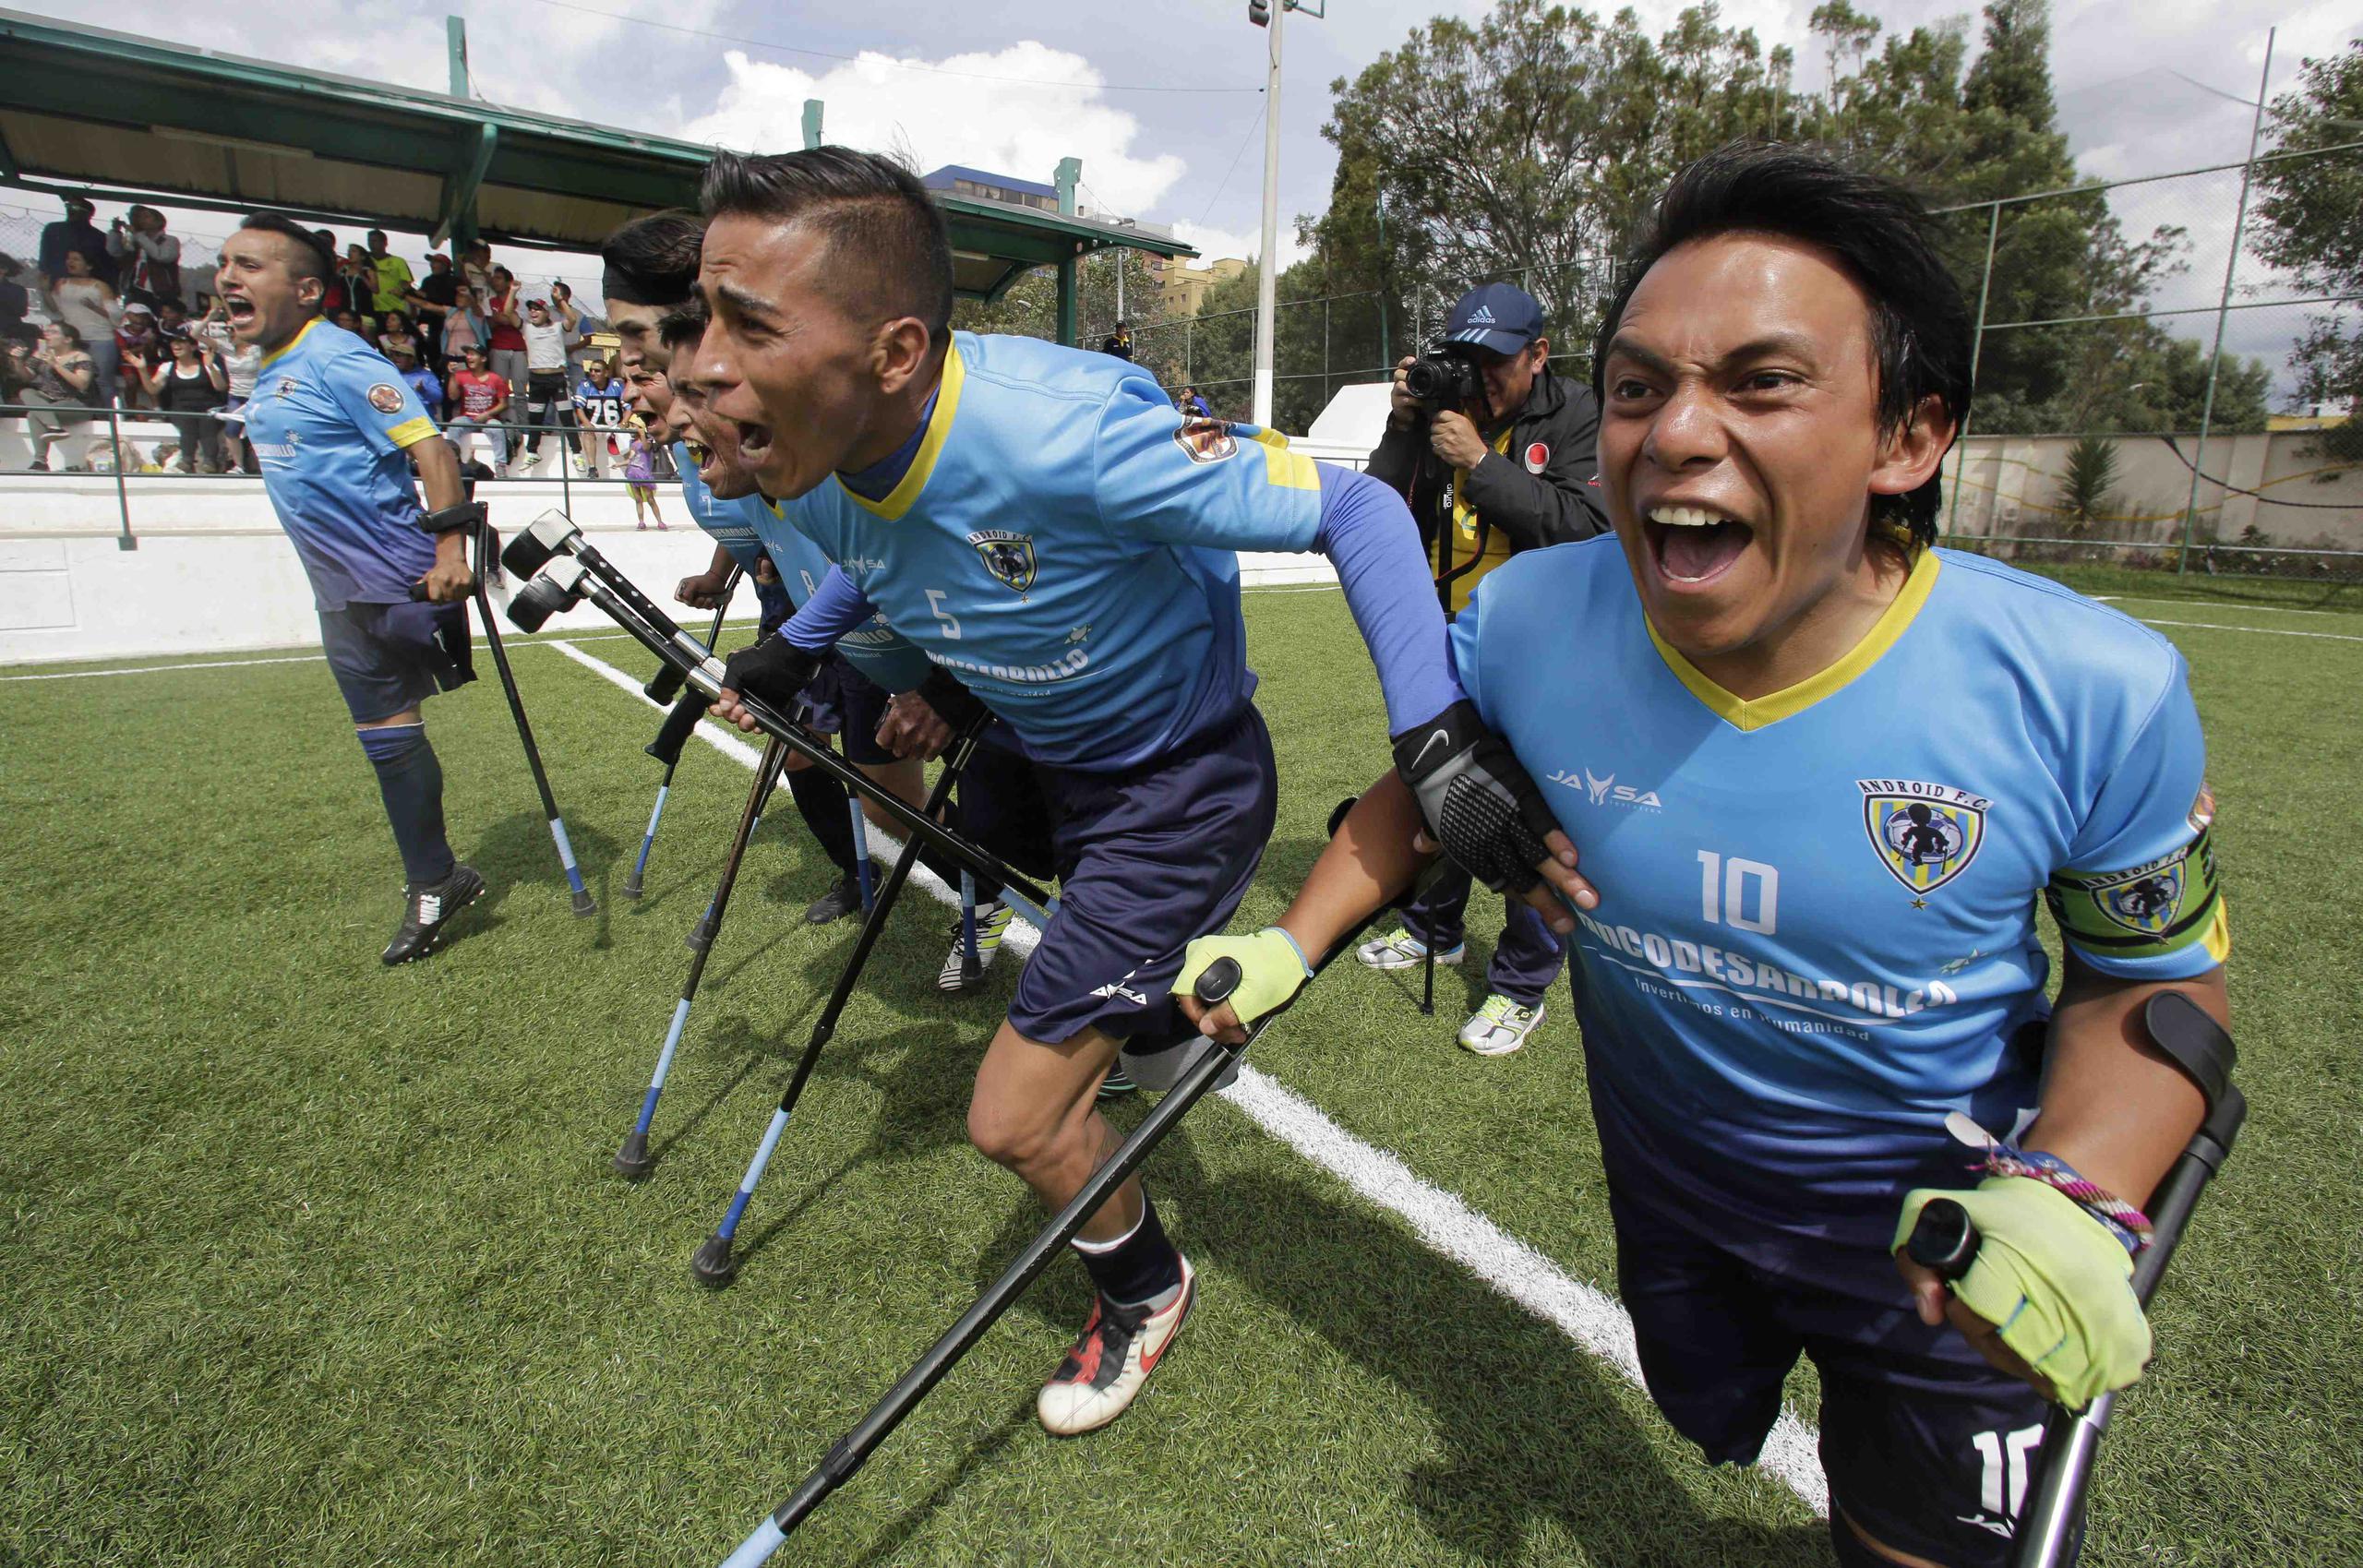 Jugadores del equipo Android celebran el ganar el torneo nacional de fútbol para jugadores con miembros amputados, en Quito, Ecuador. (AP / Dolores Ochoa)